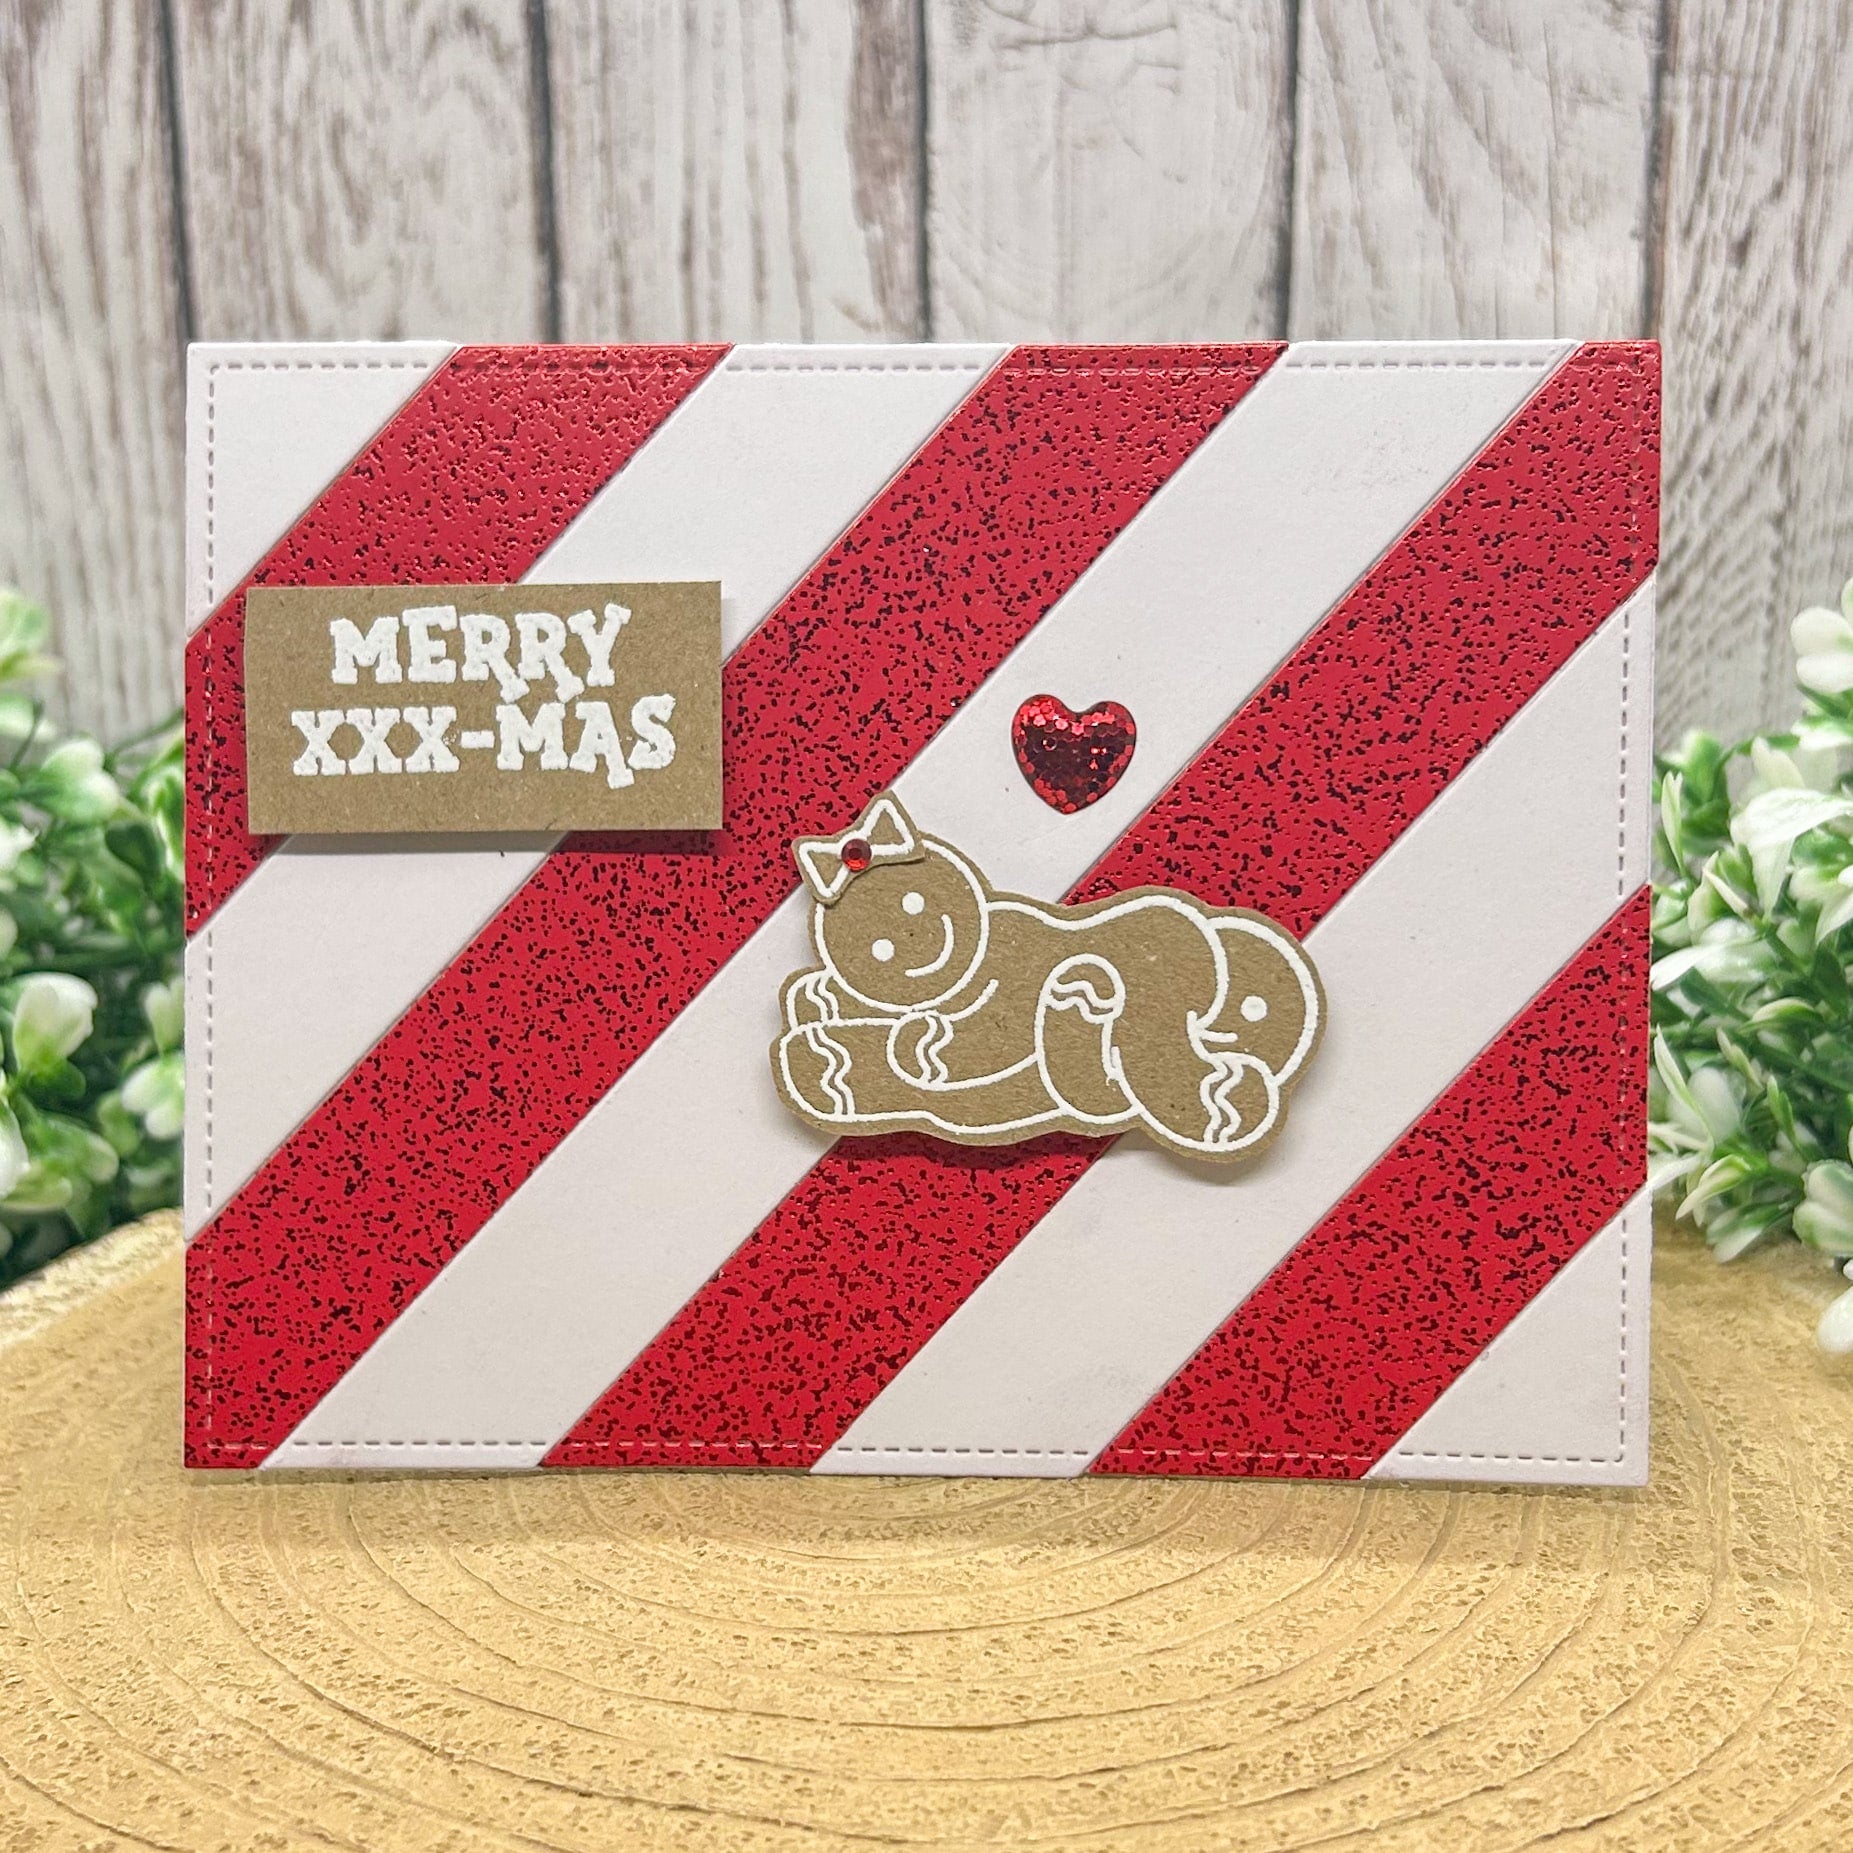 Merry XXX-mas Gingerbread 69 Couple Rude Handmade Christmas Card